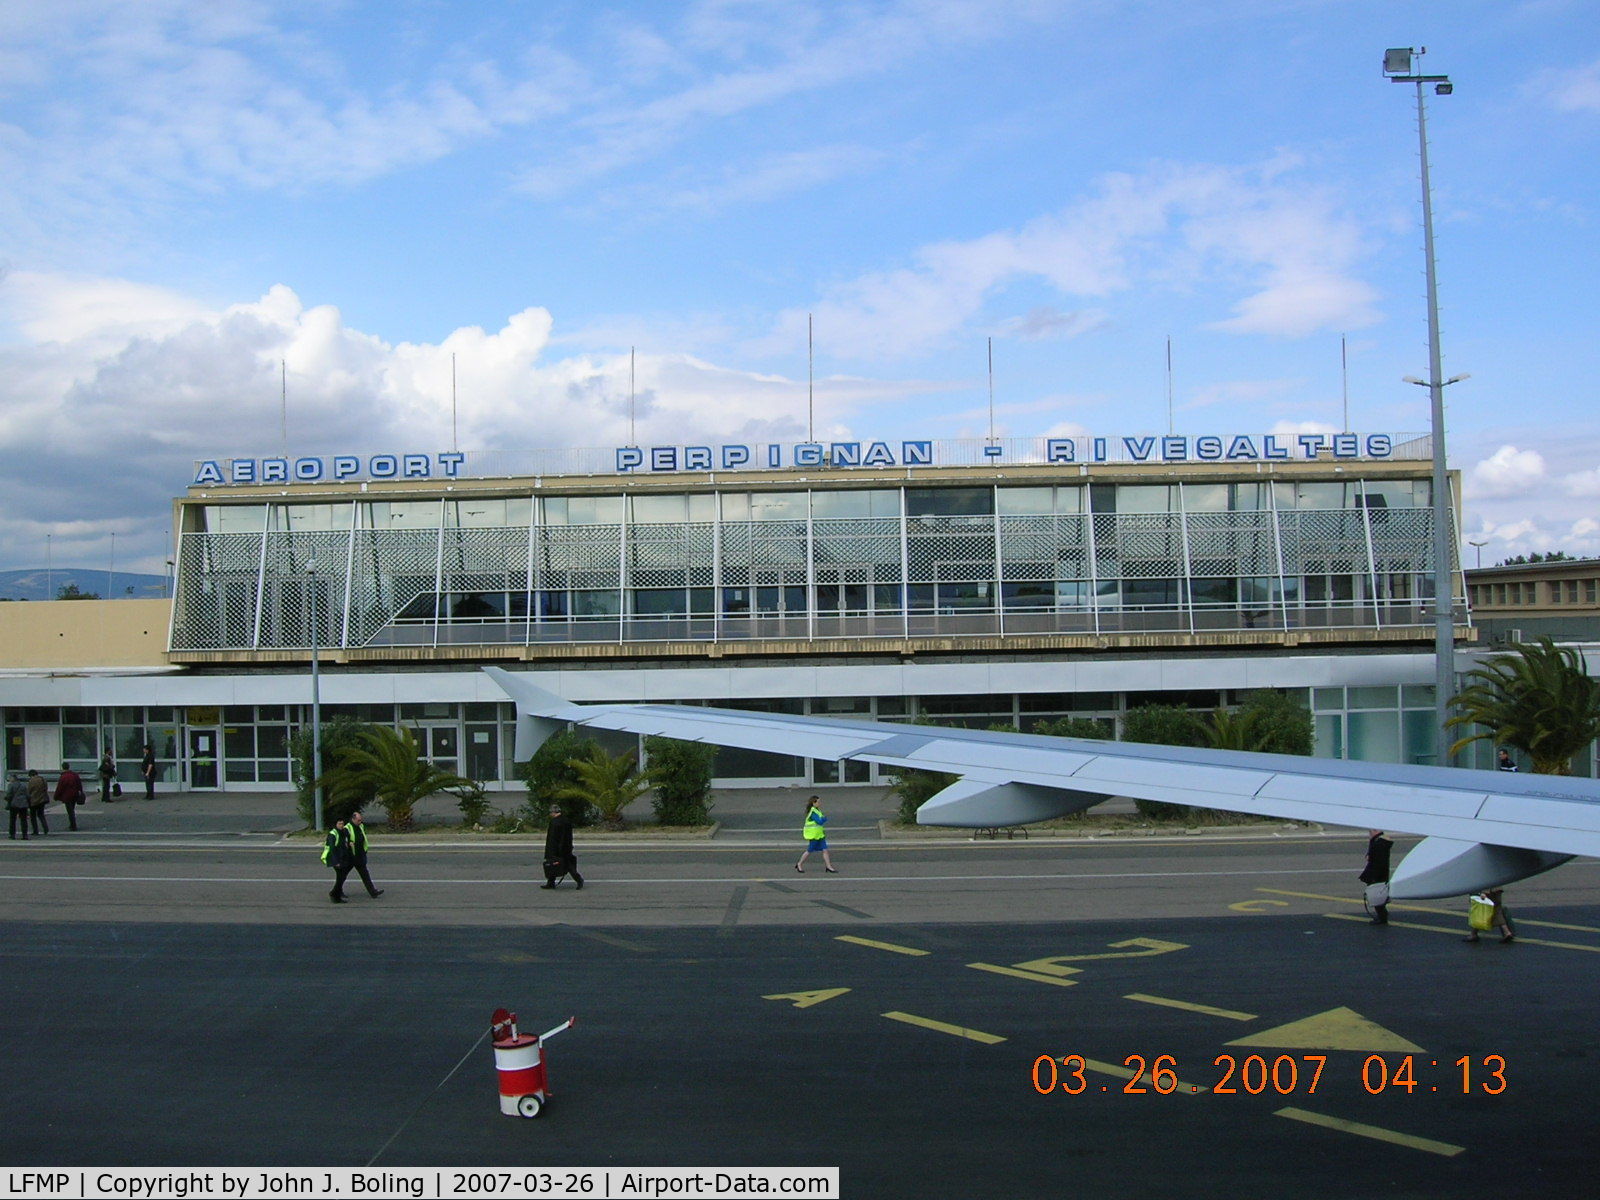 Perpignan Rivesaltes Airport, Perpignan France (LFMP) - Terminal at Perpignan, France. No jet bridge. Stairs and walk across the ramp - rain or shine